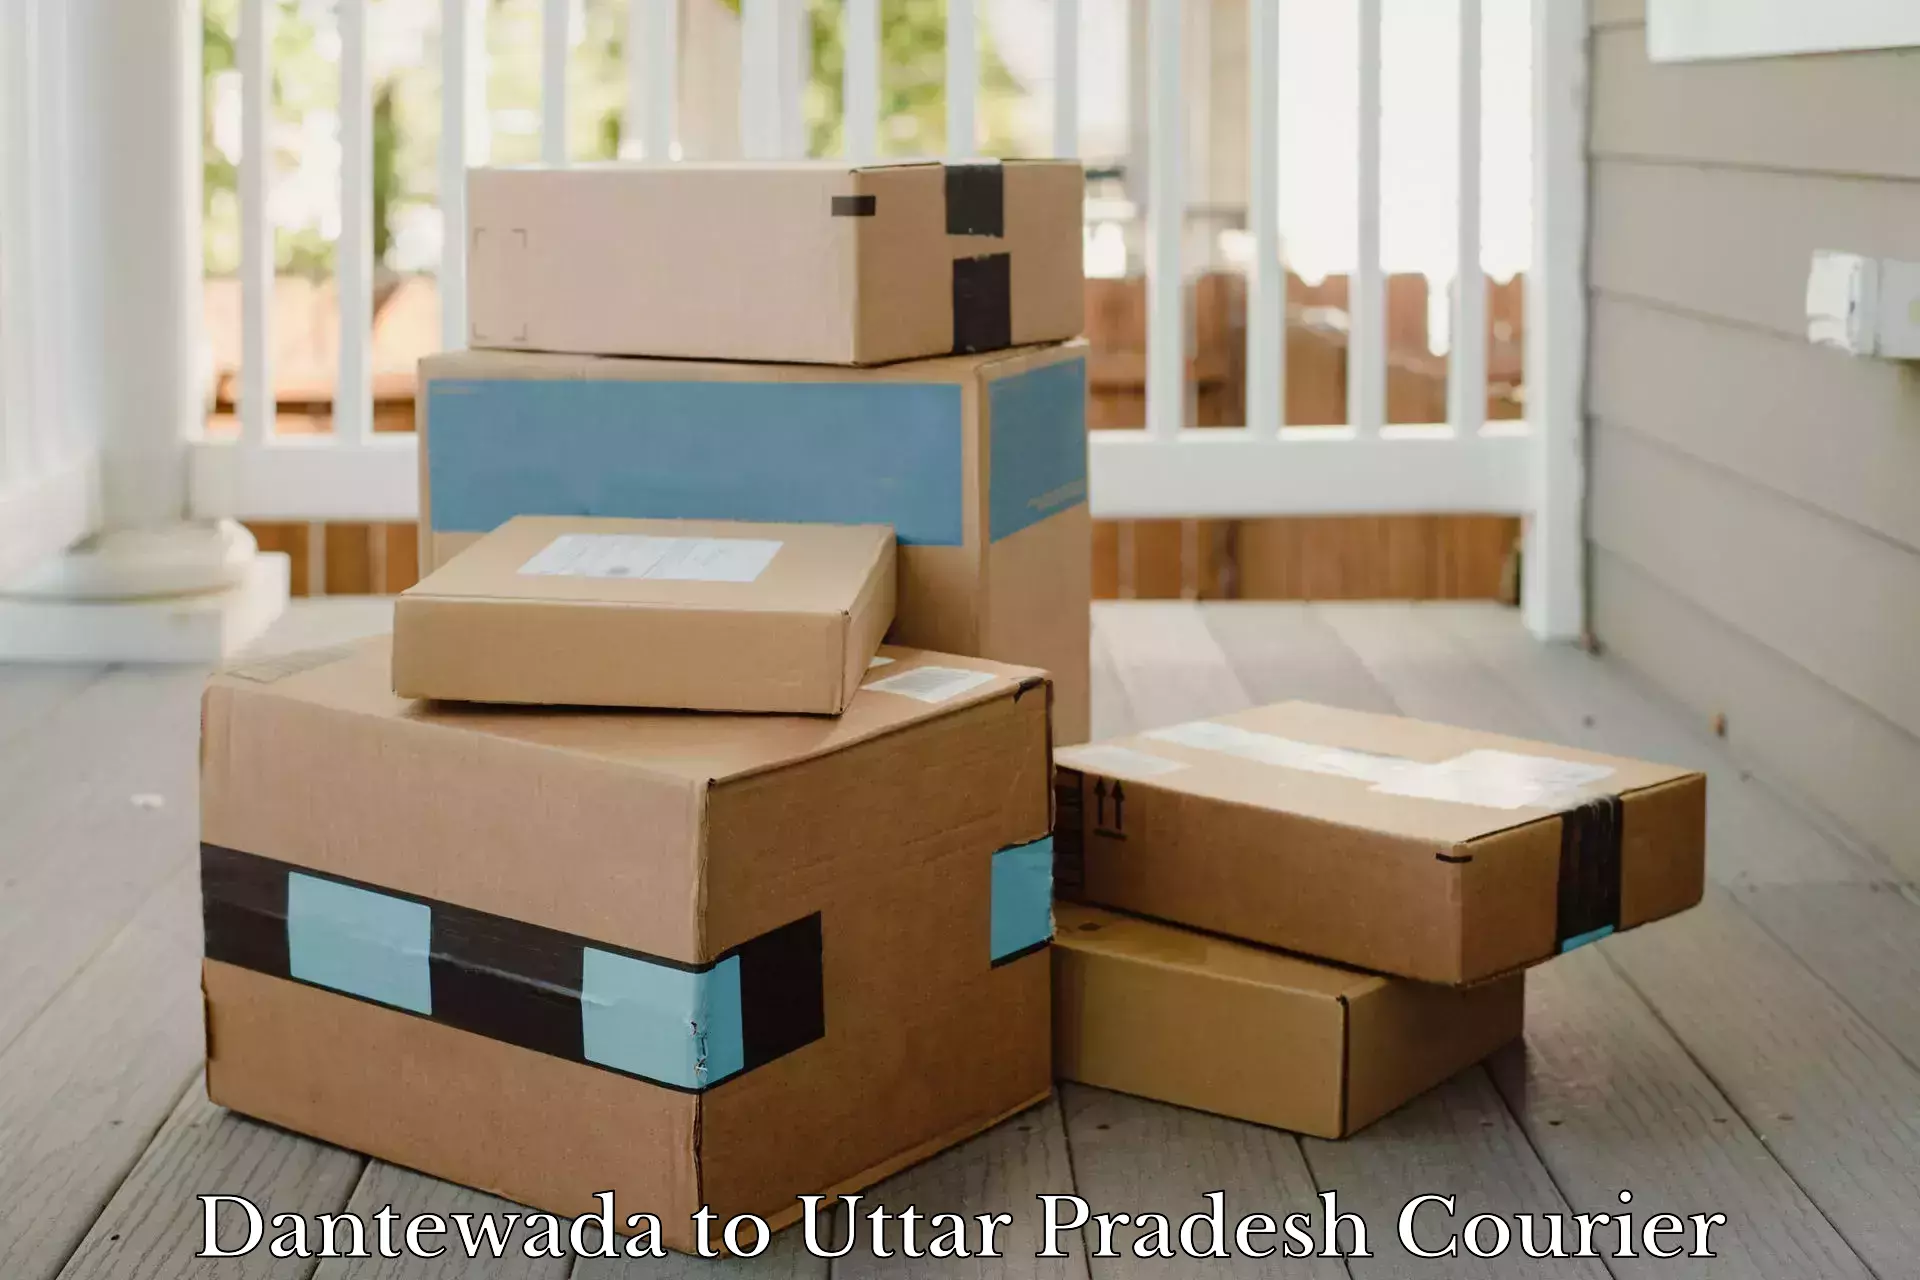 Customer-oriented courier services Dantewada to Uttar Pradesh